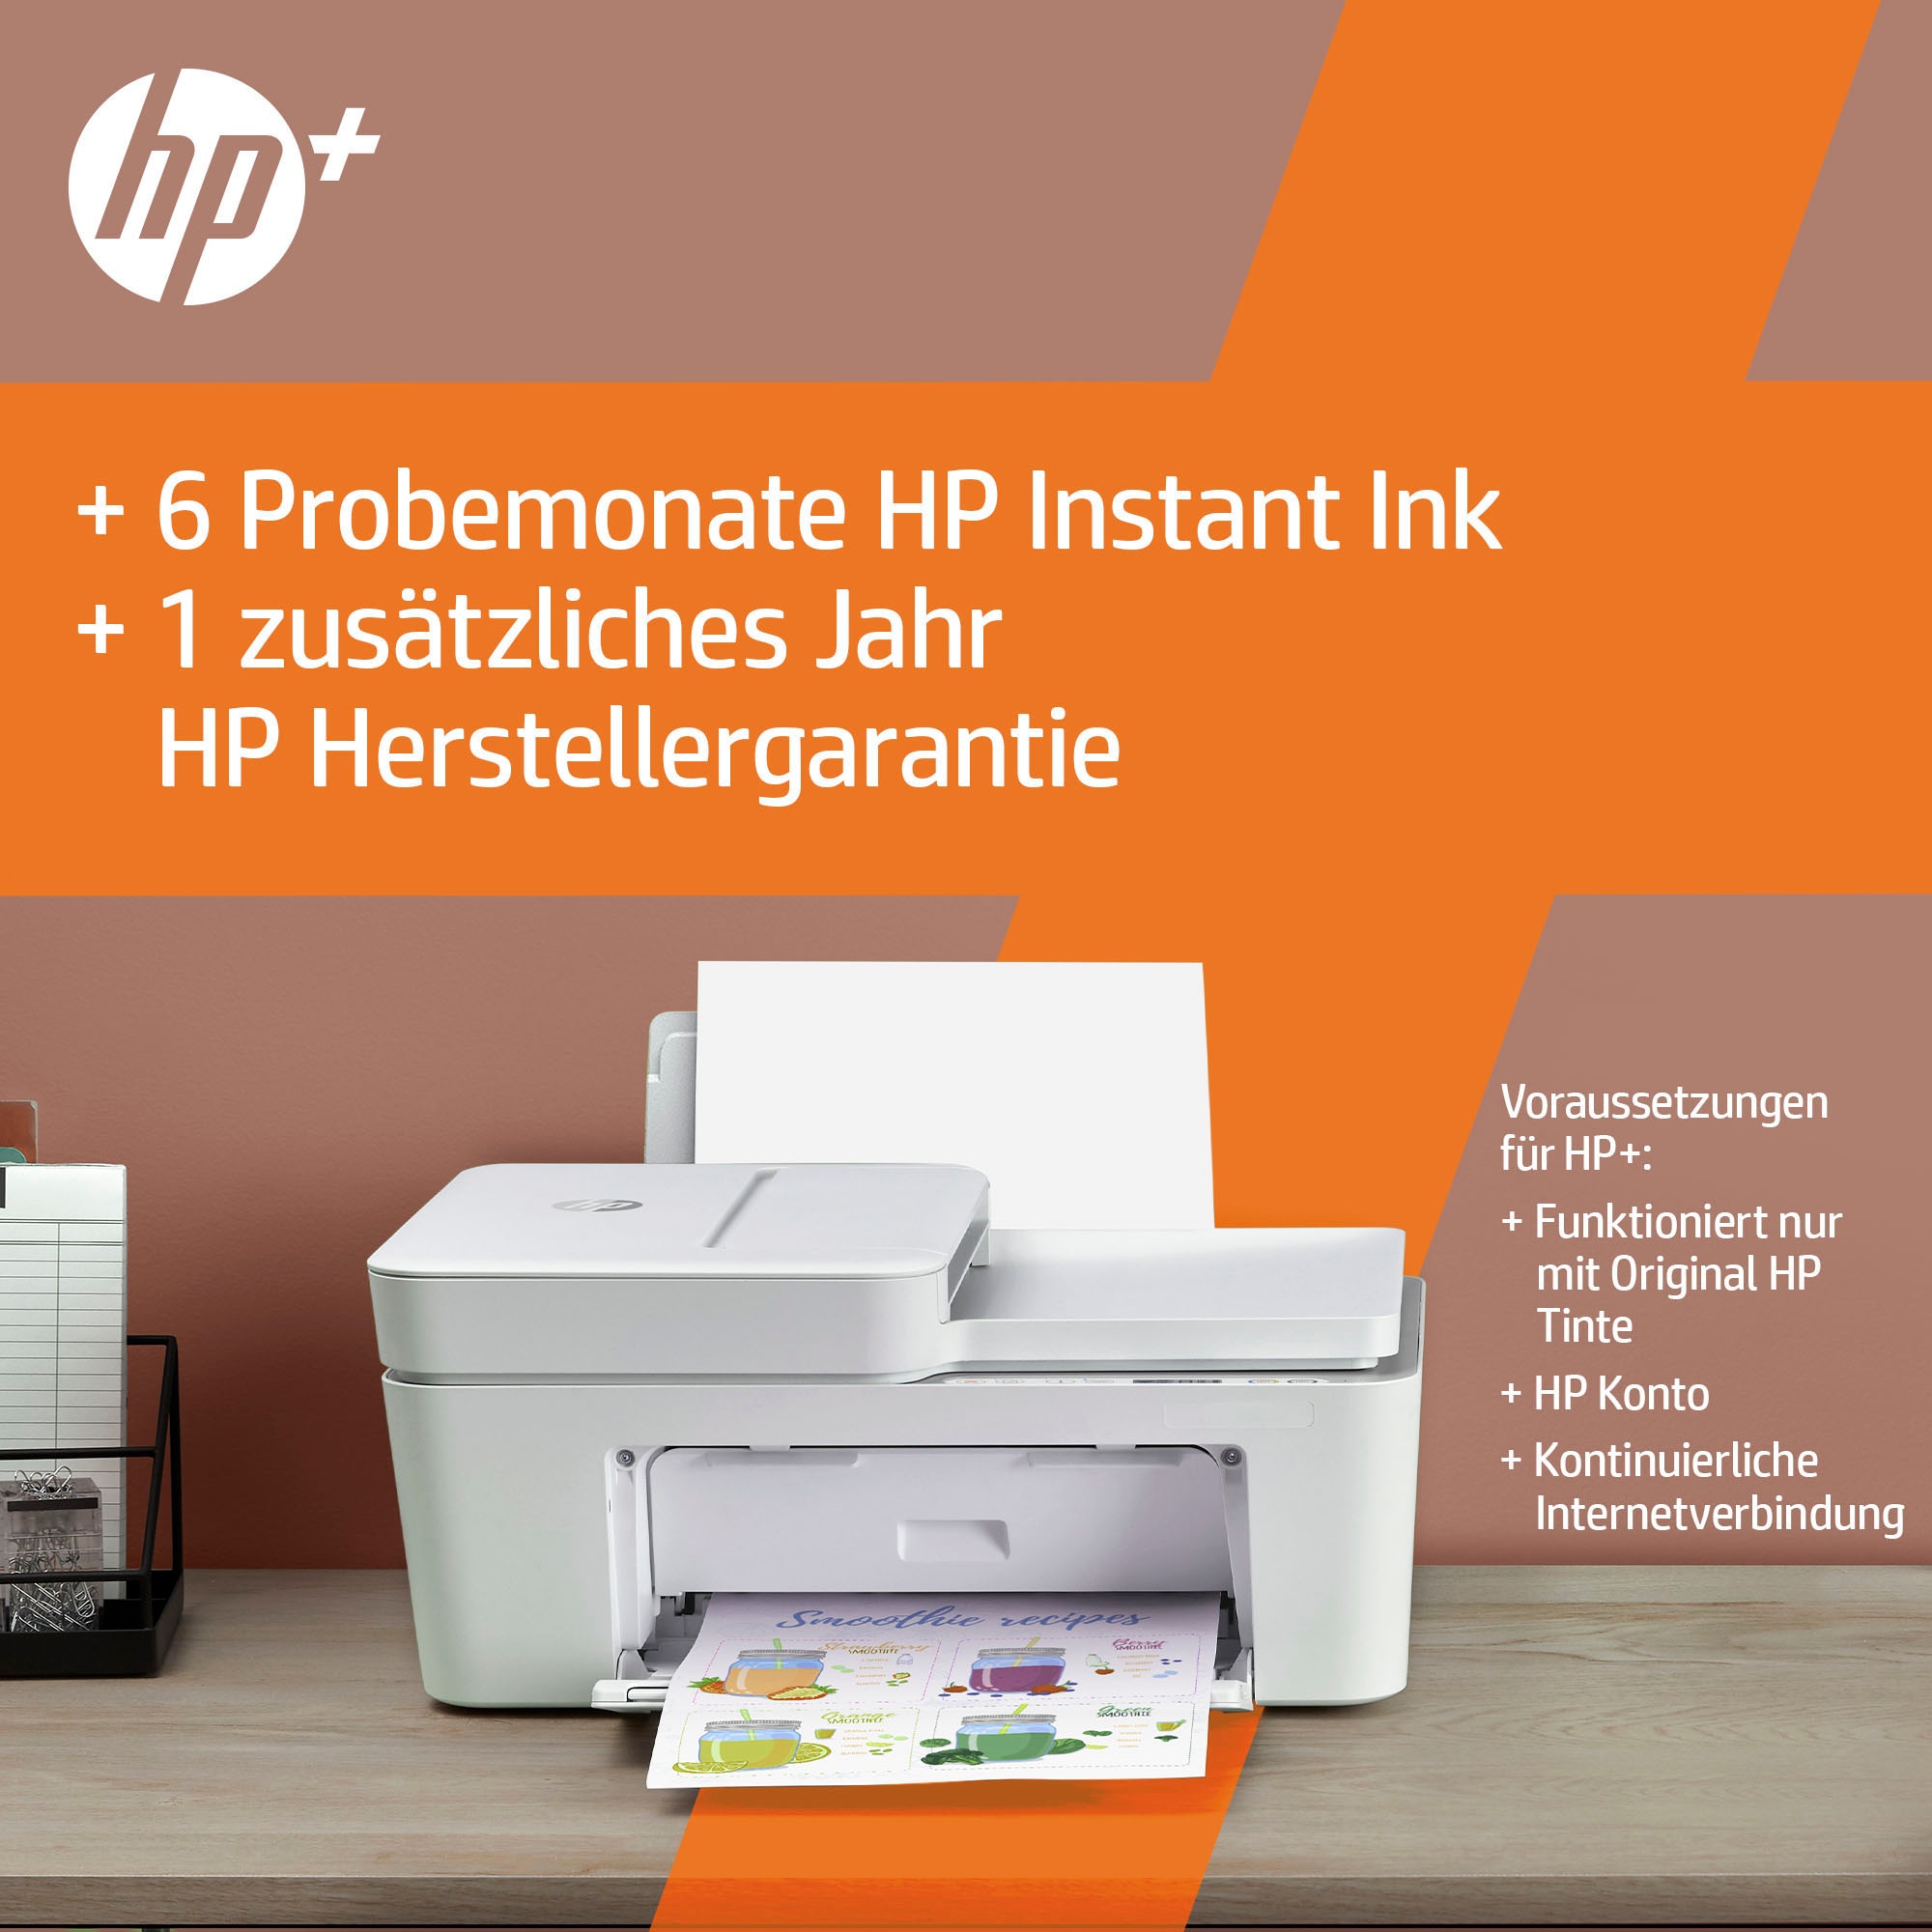 Ink HP Drucker«, one »DeskJet Multifunktionsdrucker in online kompatibel Instant HP+ All OTTO 4120e bei